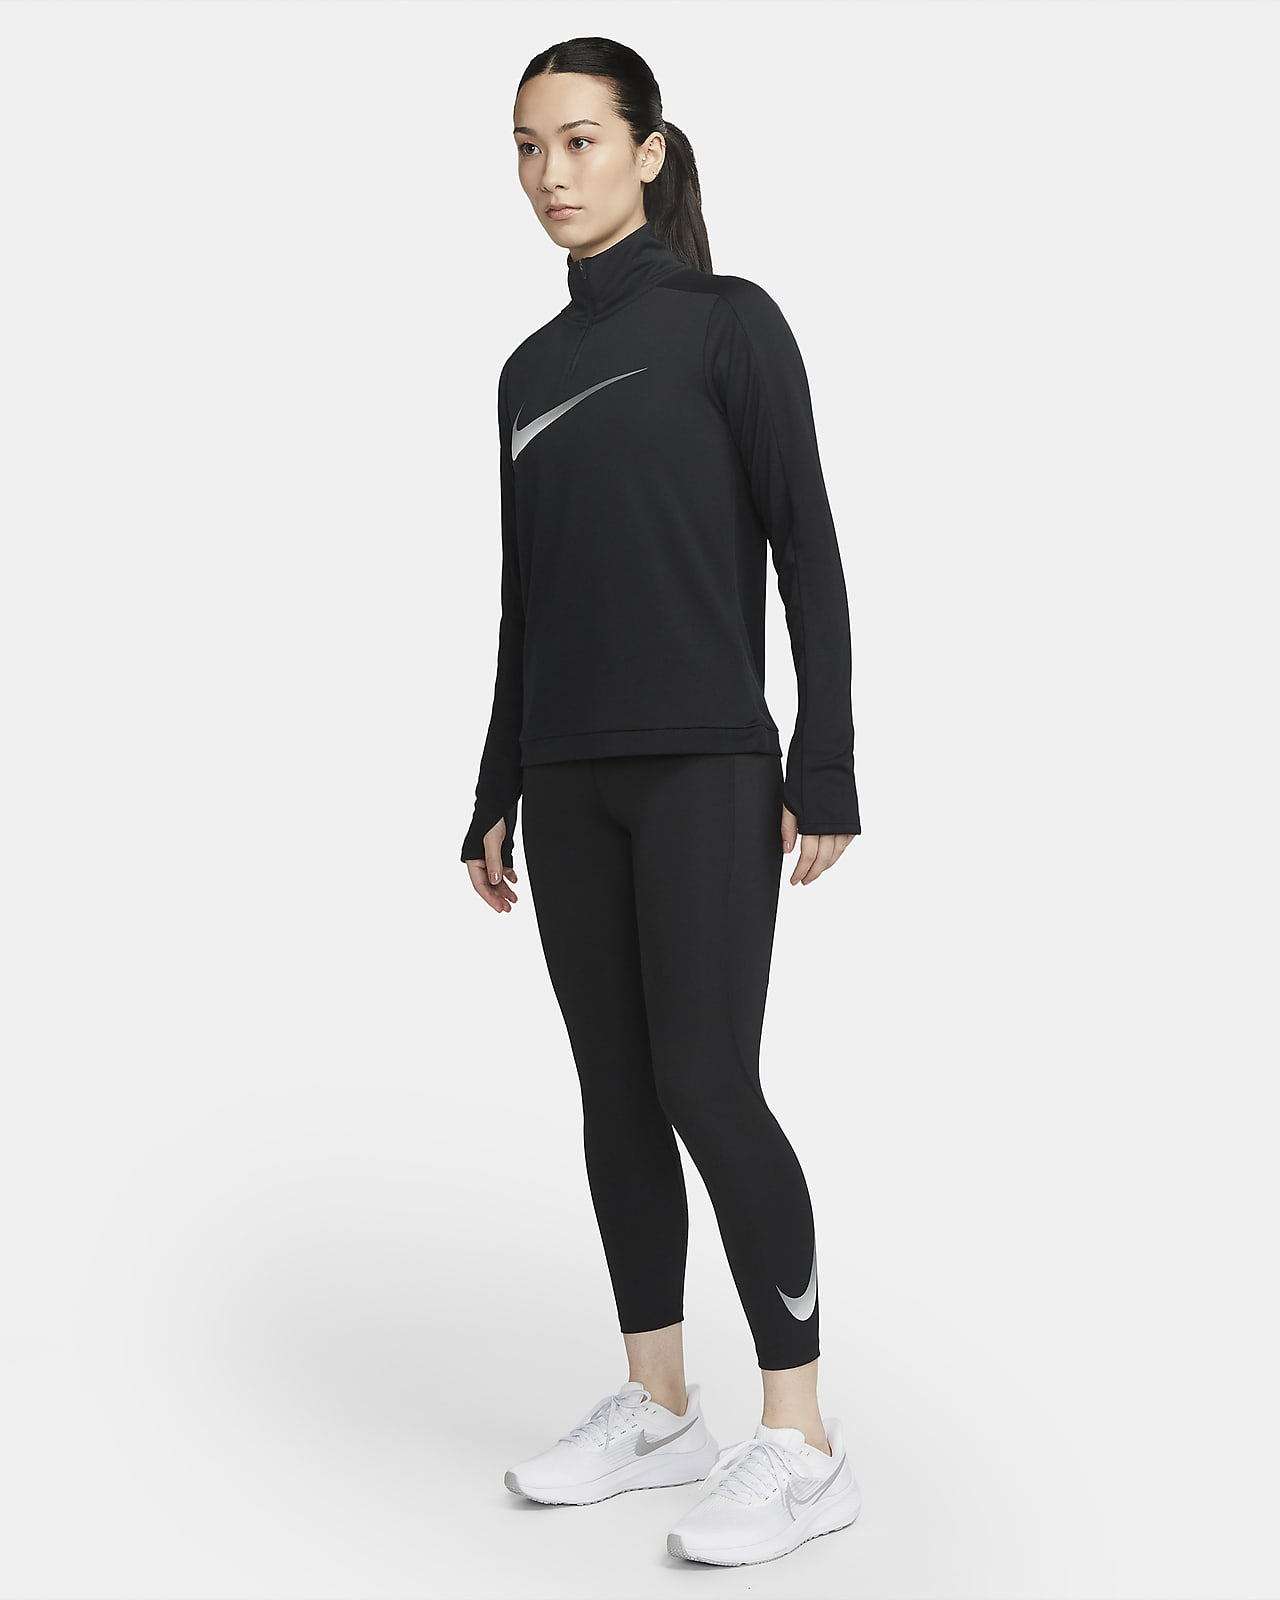 Nike Running - Femme - Legging 7/8 en tissu à séchage rapide - Violet